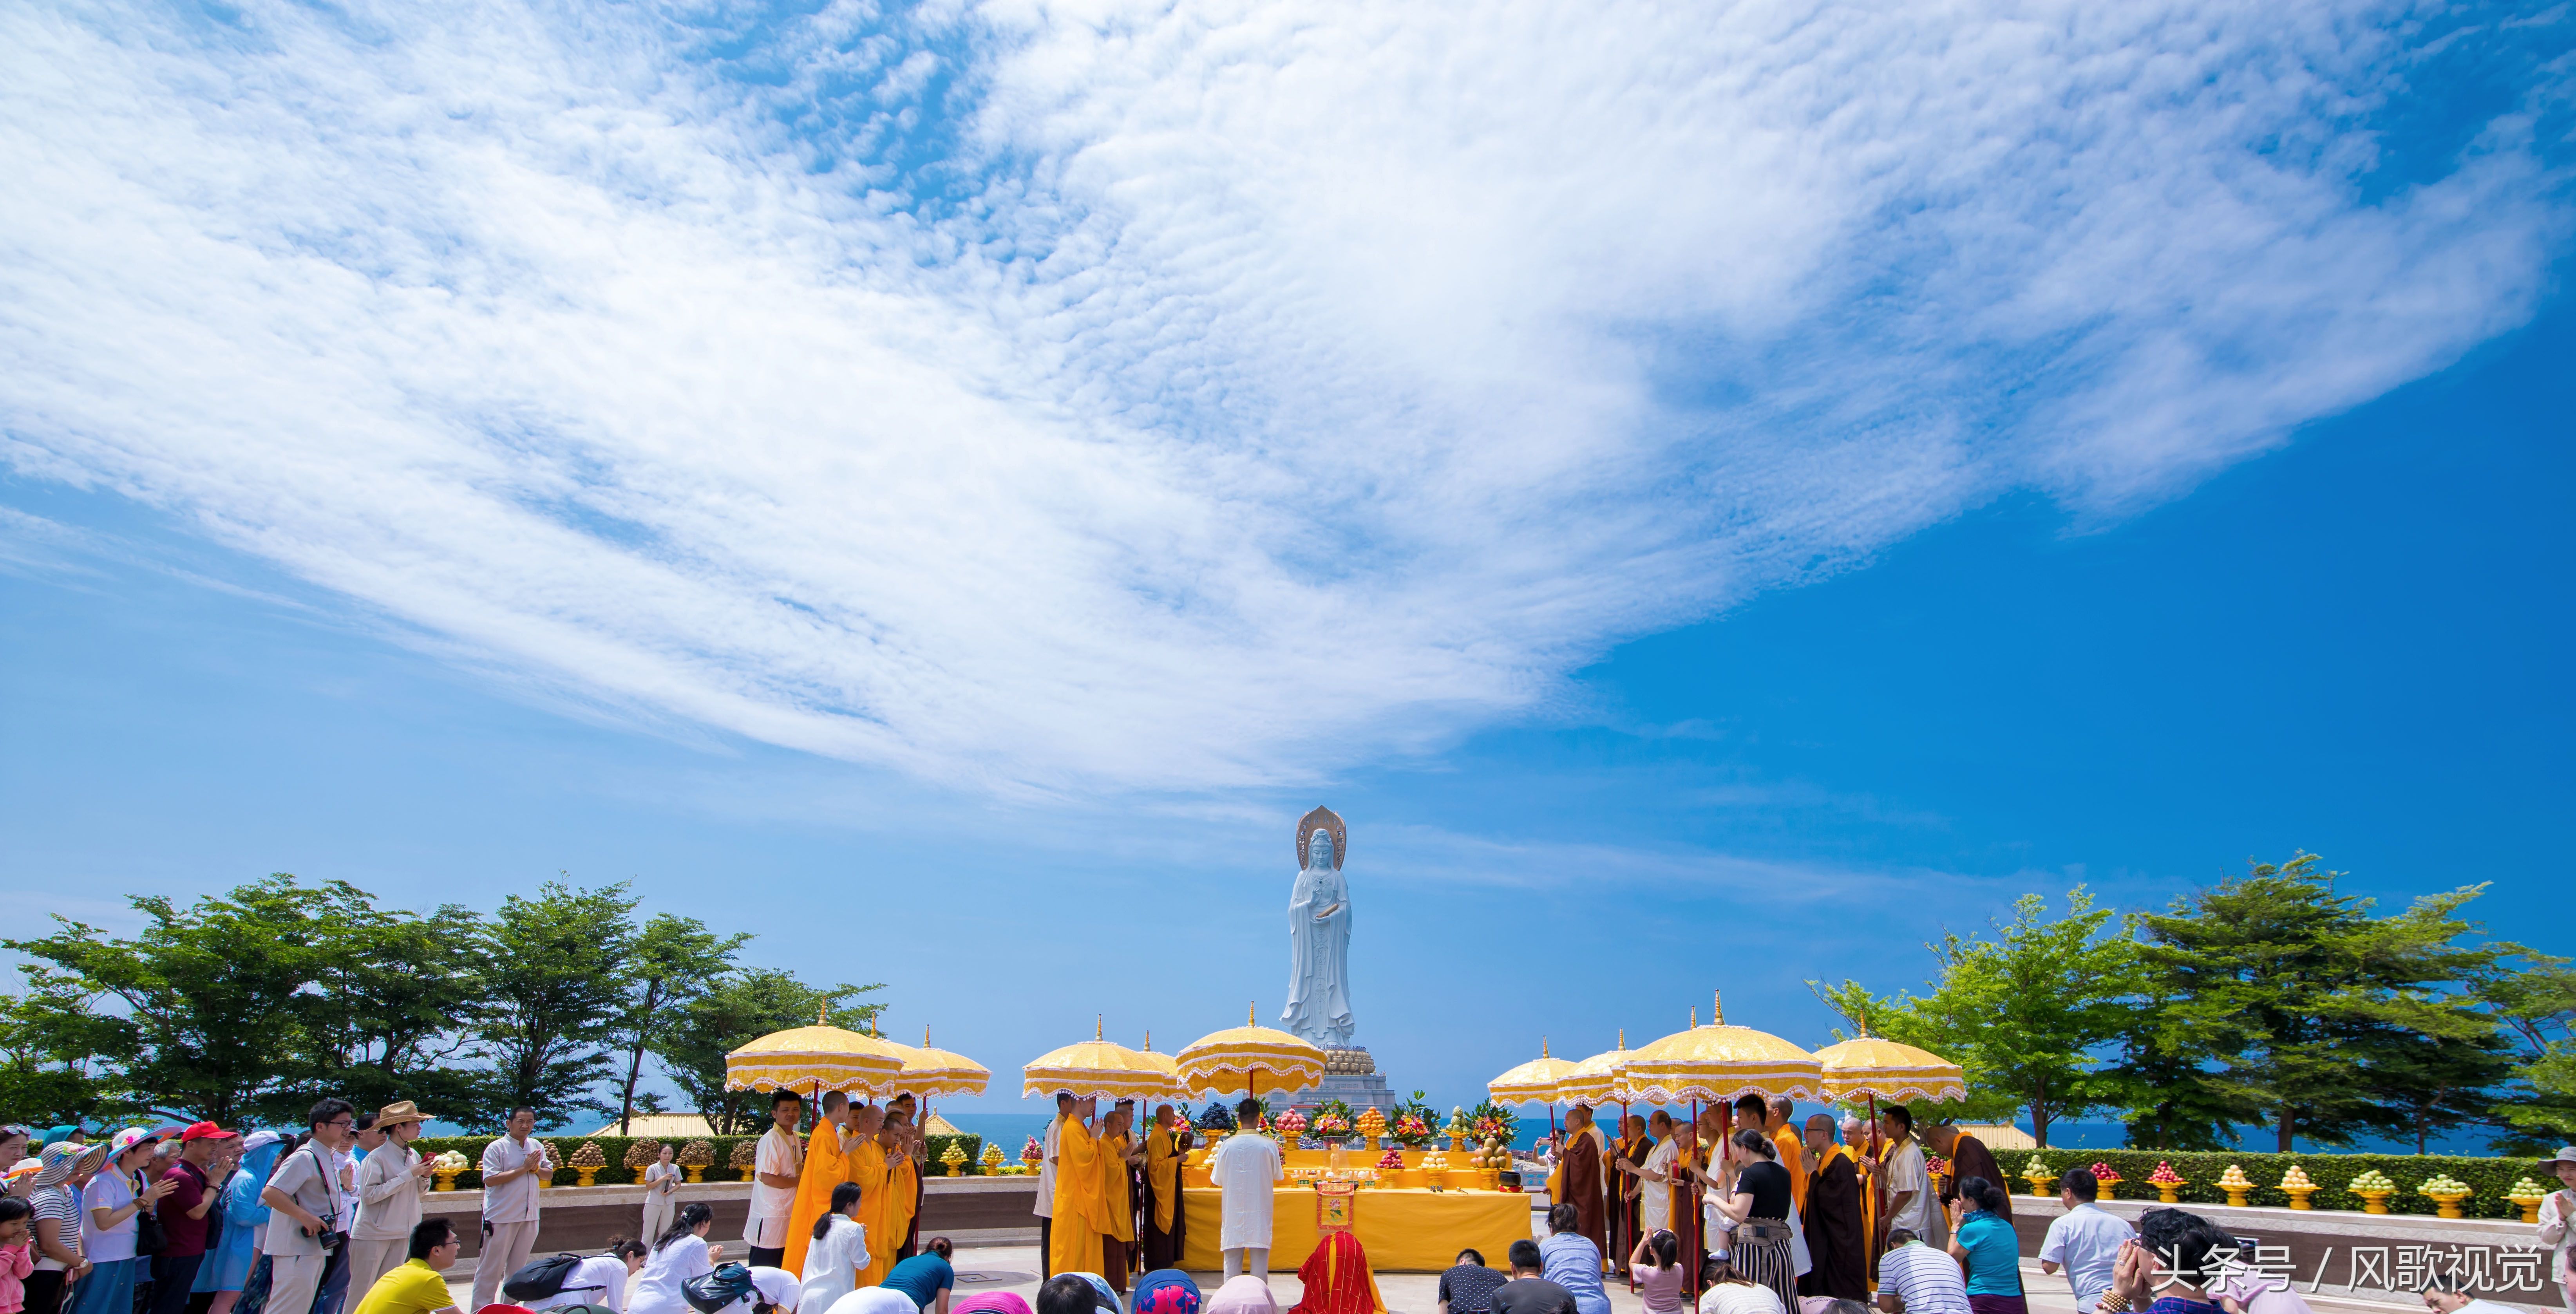 海南三亚:南山海上观音举行开光十三周年纪念祈福法会